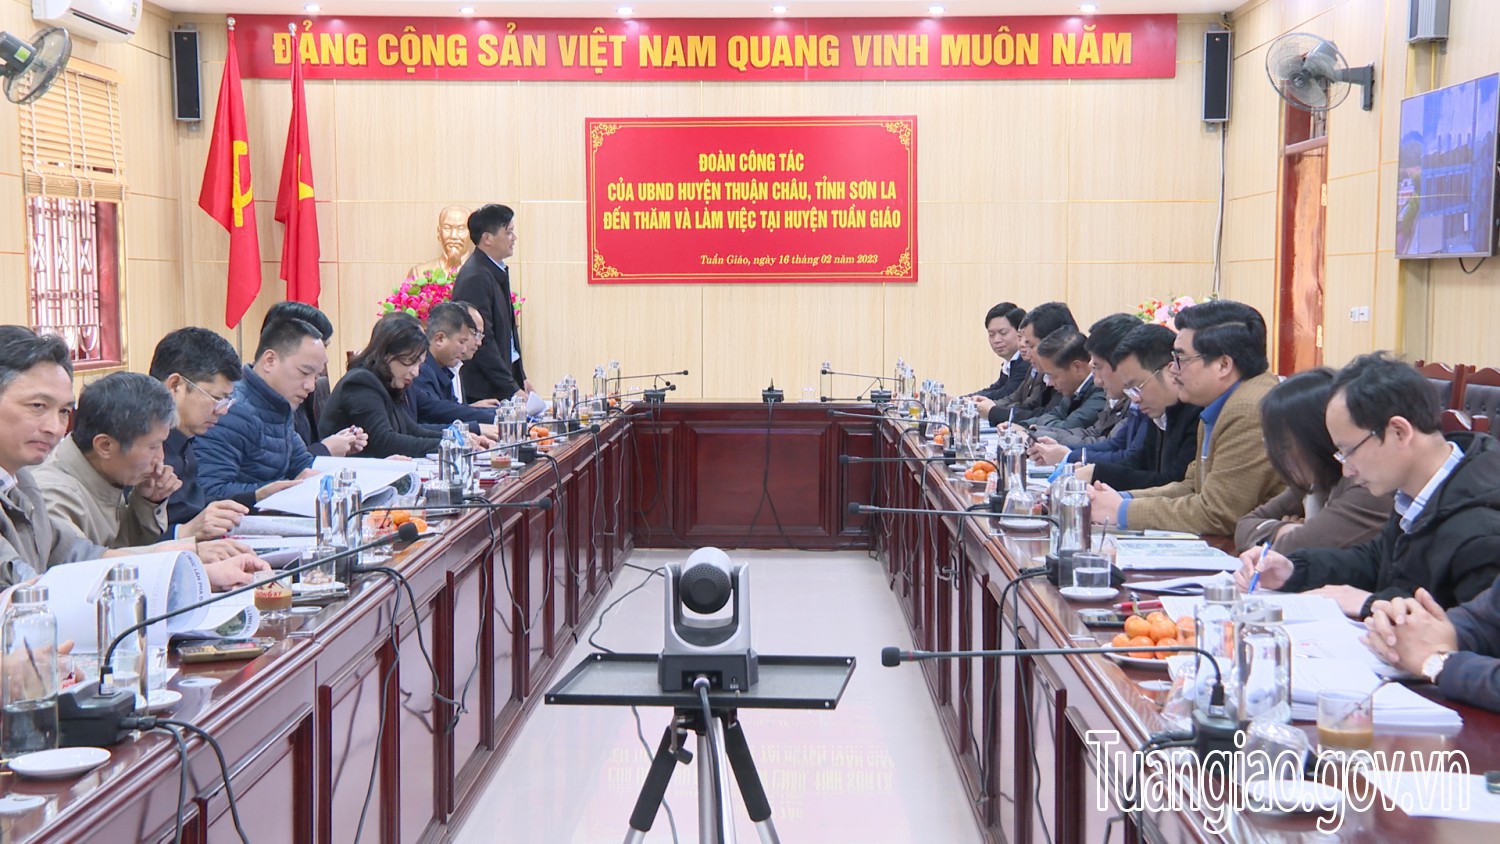 Đoàn công tác của UBND huyện Thuận Châu Tỉnh Sơn La đến thăm và làm việc tại hình bầu cua tôm cá
